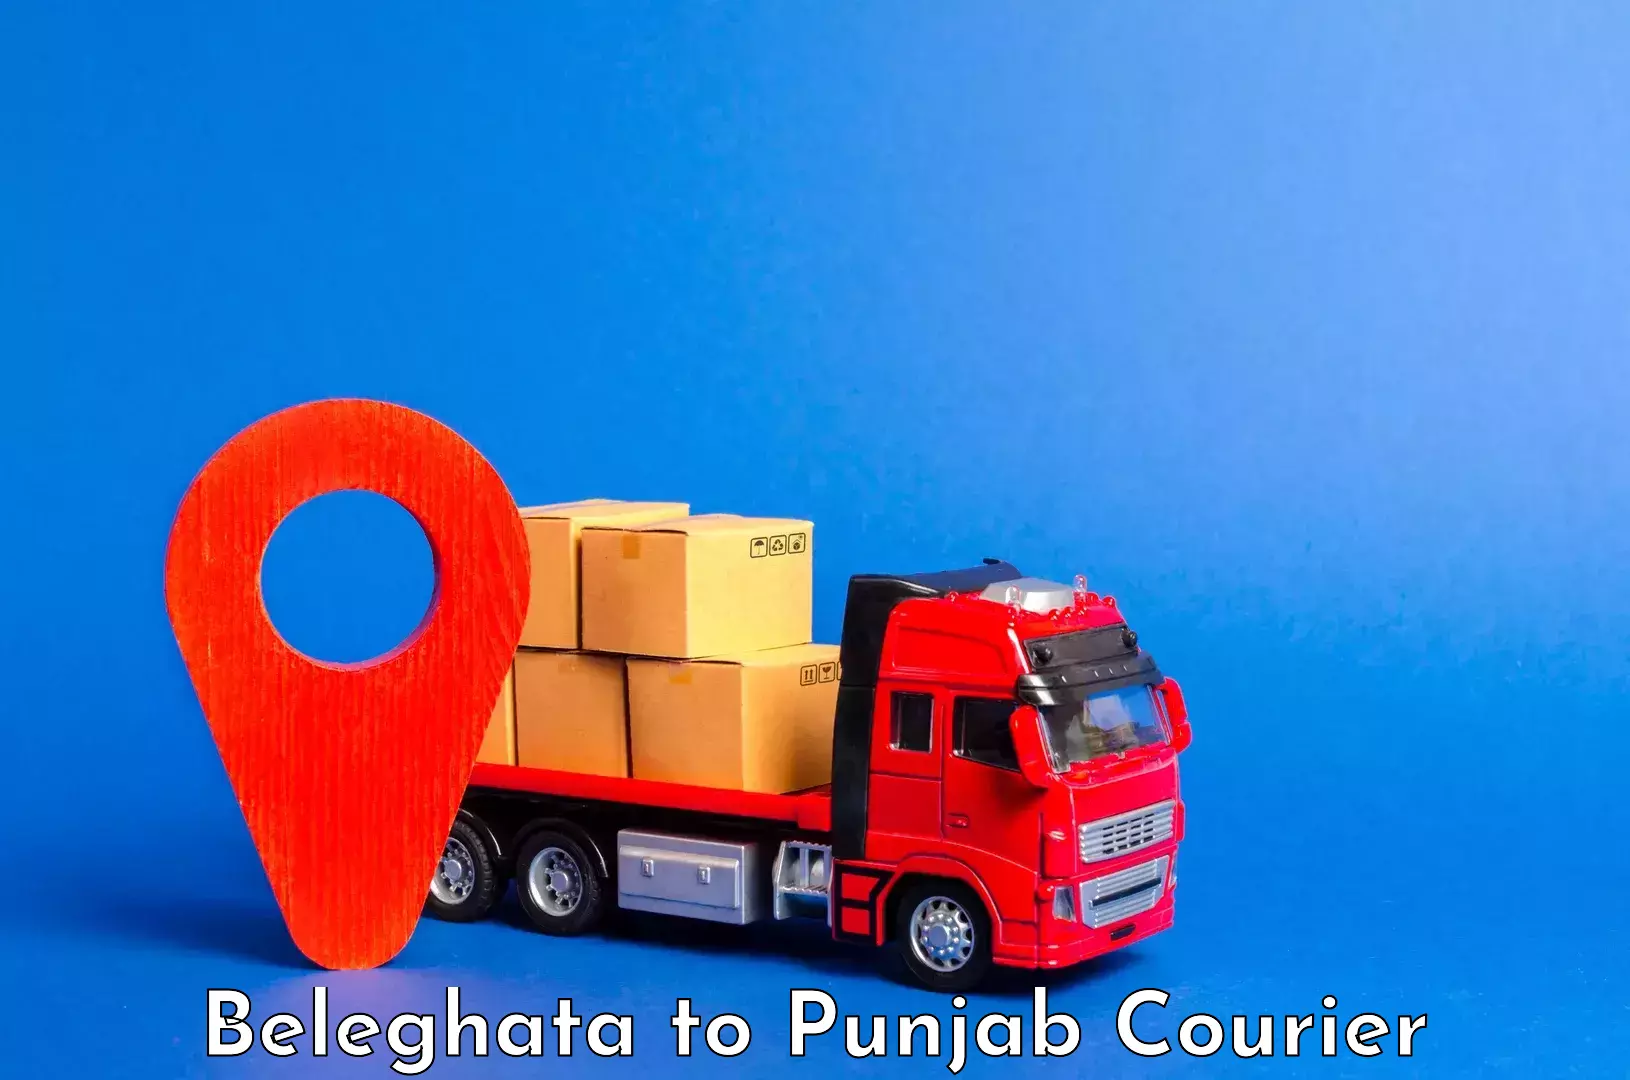 Professional baggage transport in Beleghata to Punjab